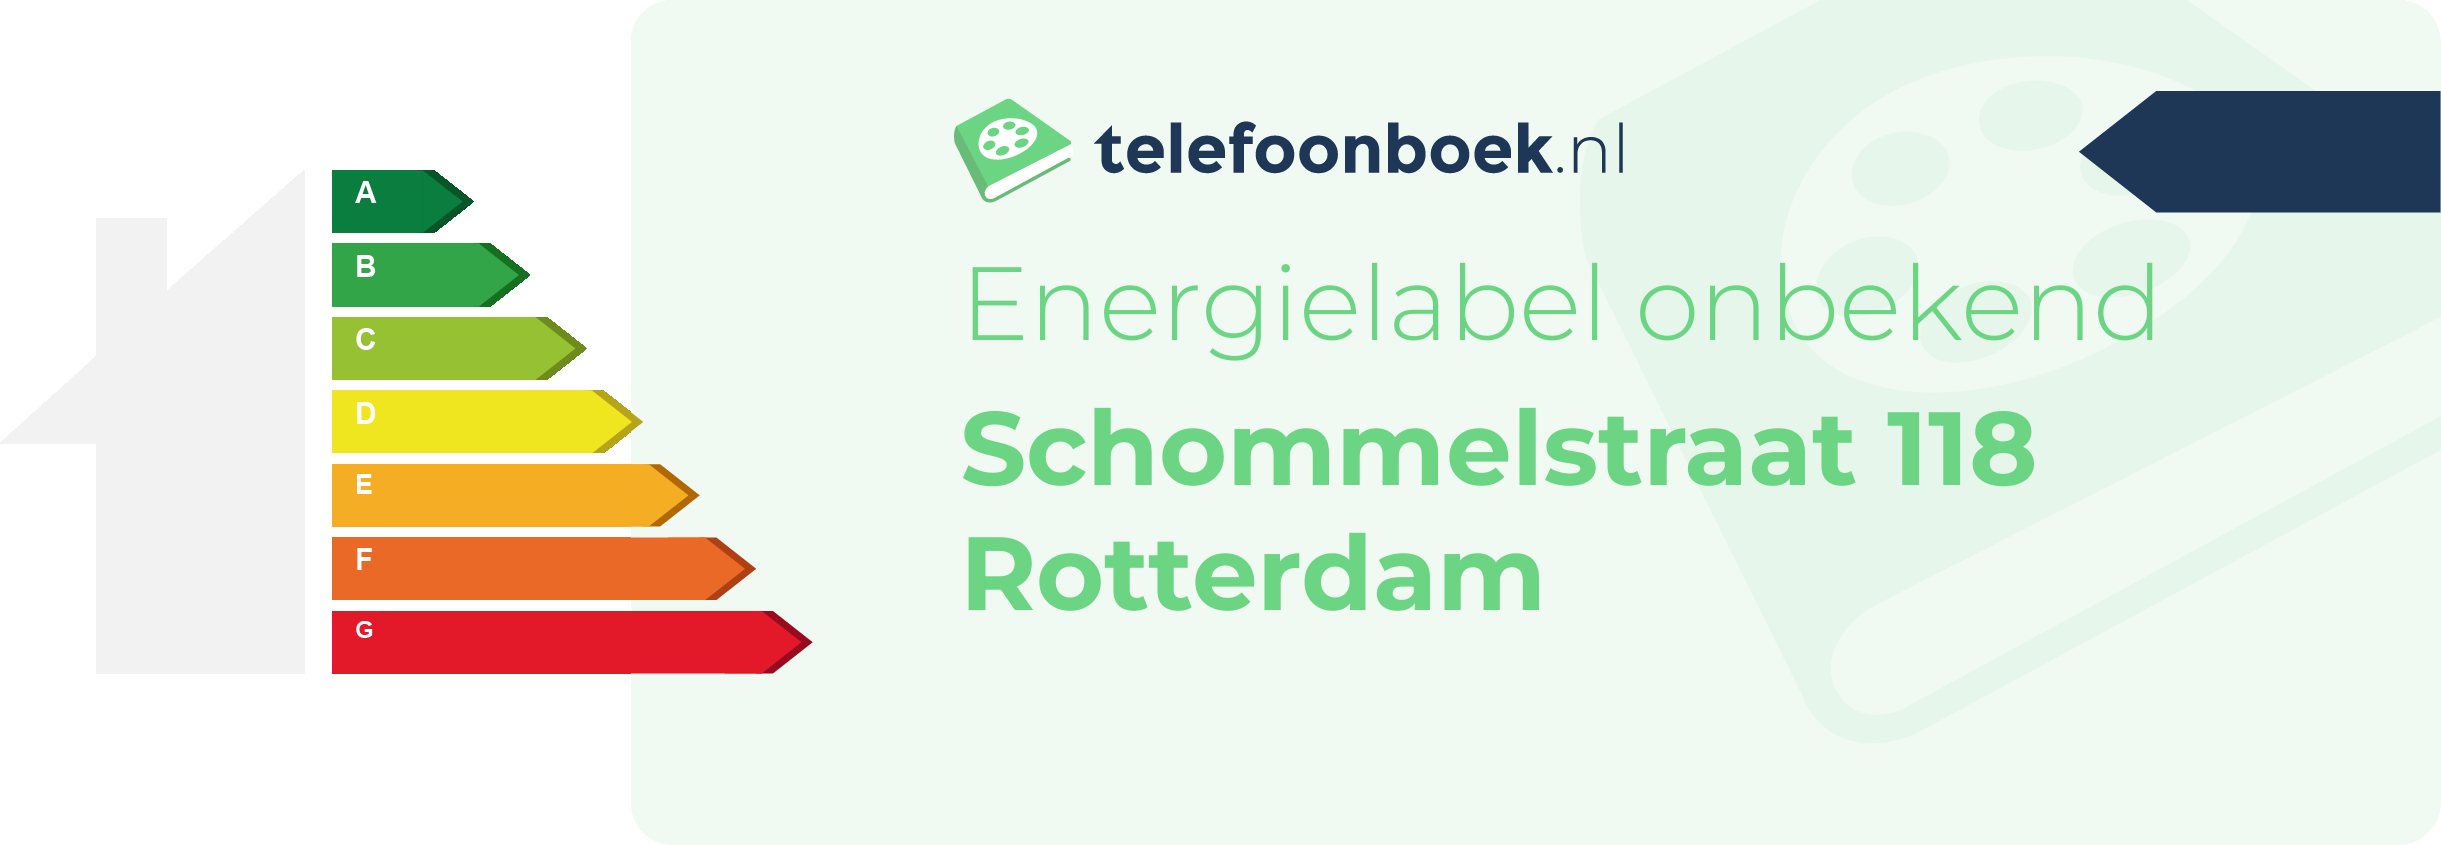 Energielabel Schommelstraat 118 Rotterdam